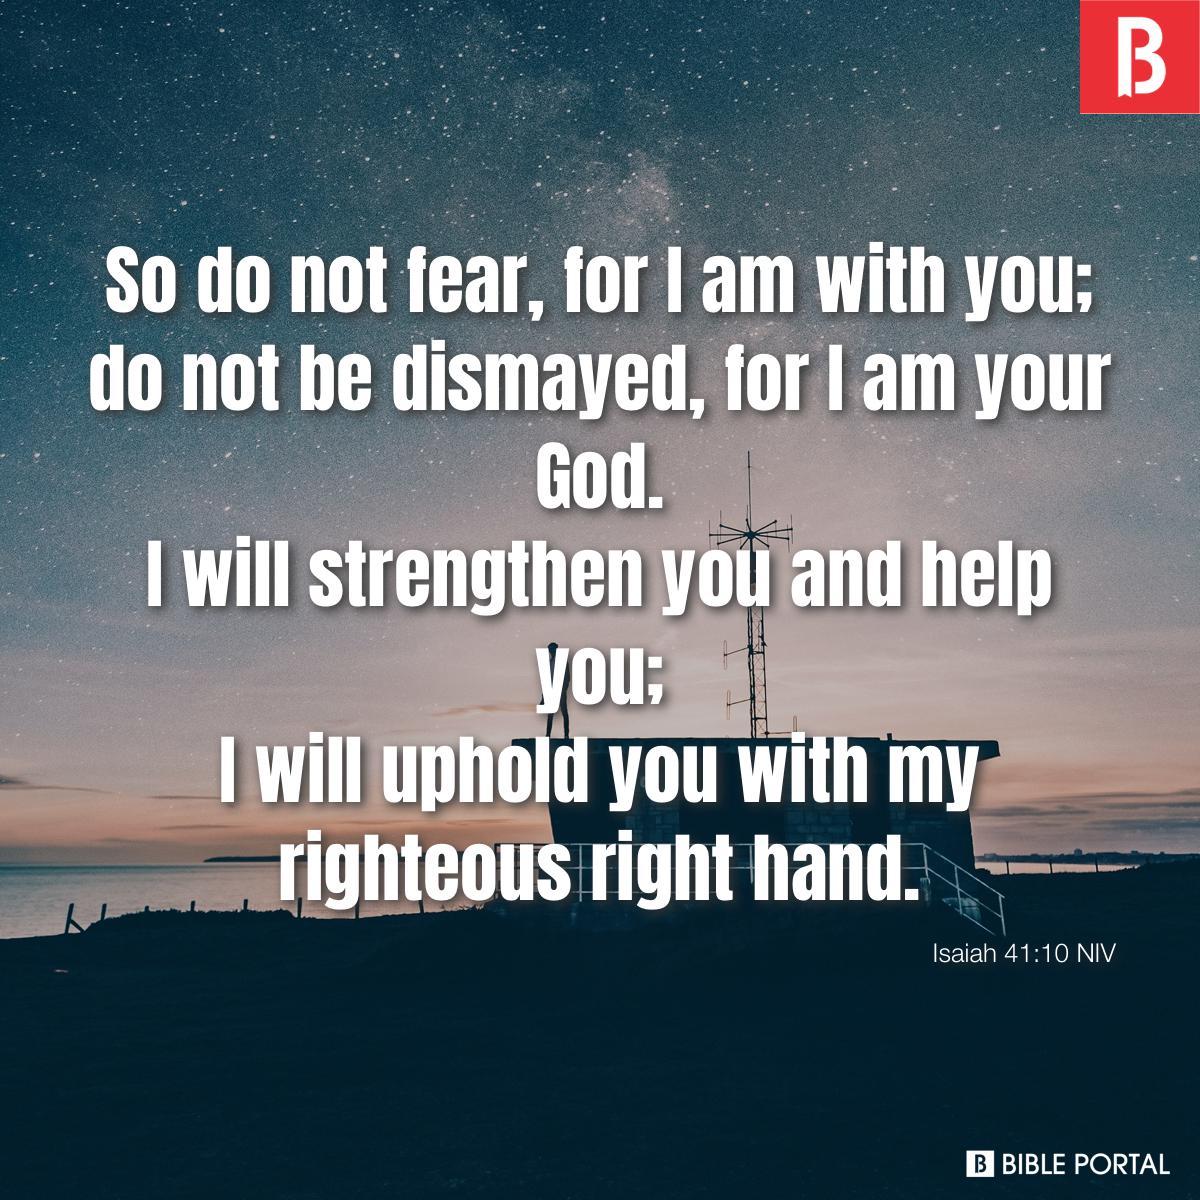 Isaiah 41:10 NIV